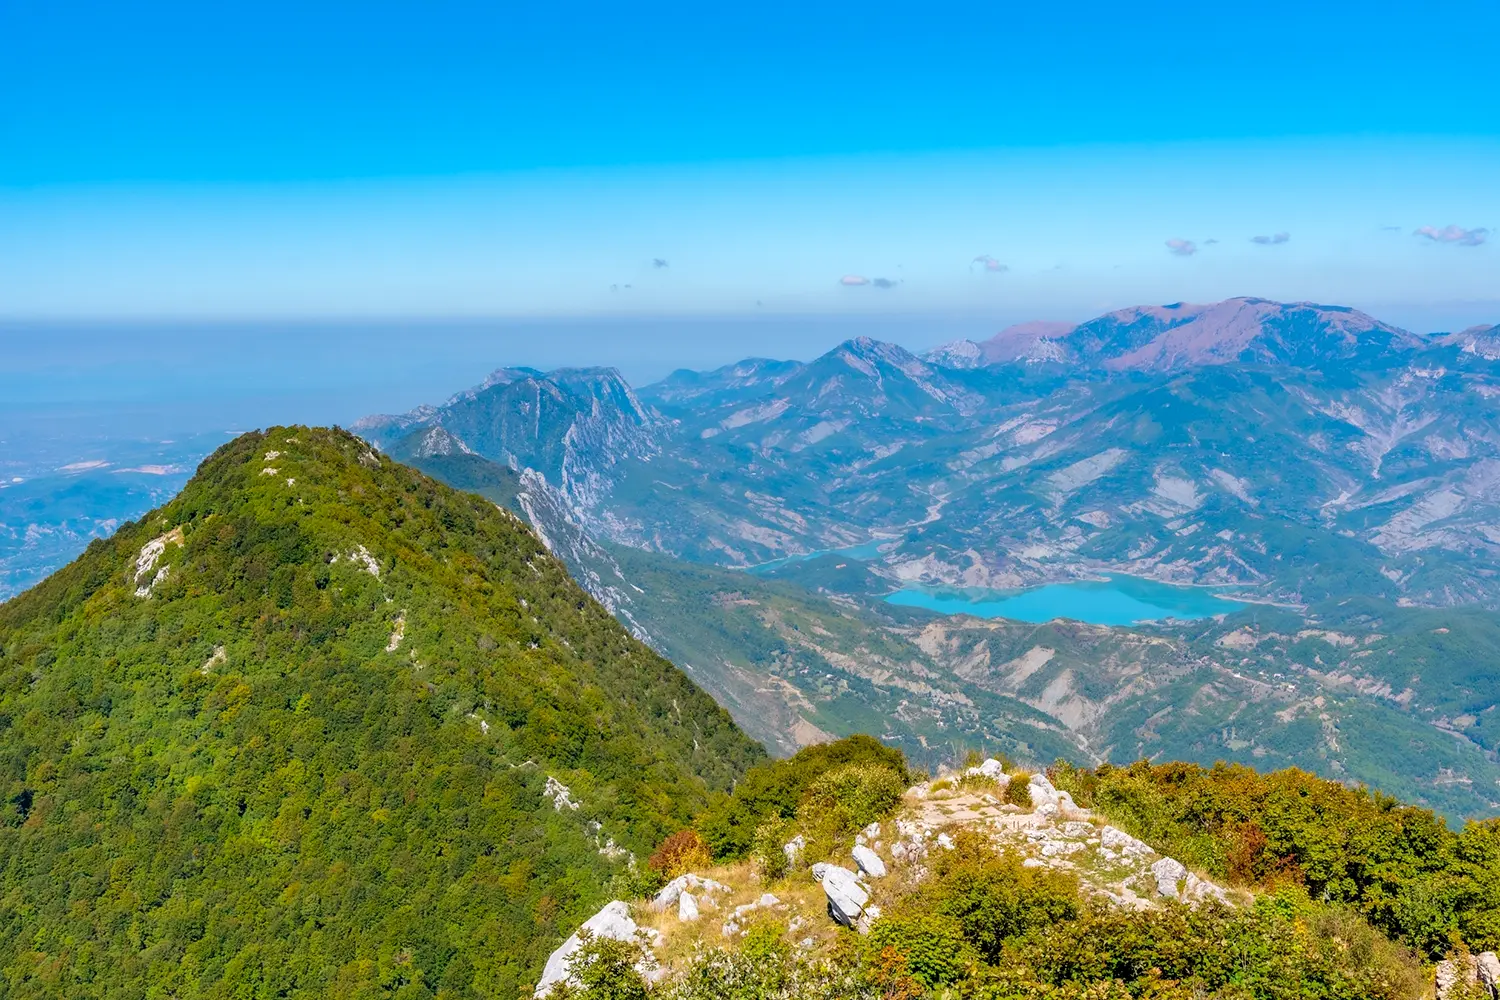 Όρος Tujanit και λίμνη Bovilla στο εθνικό πάρκο Dajti στην Αλβανία